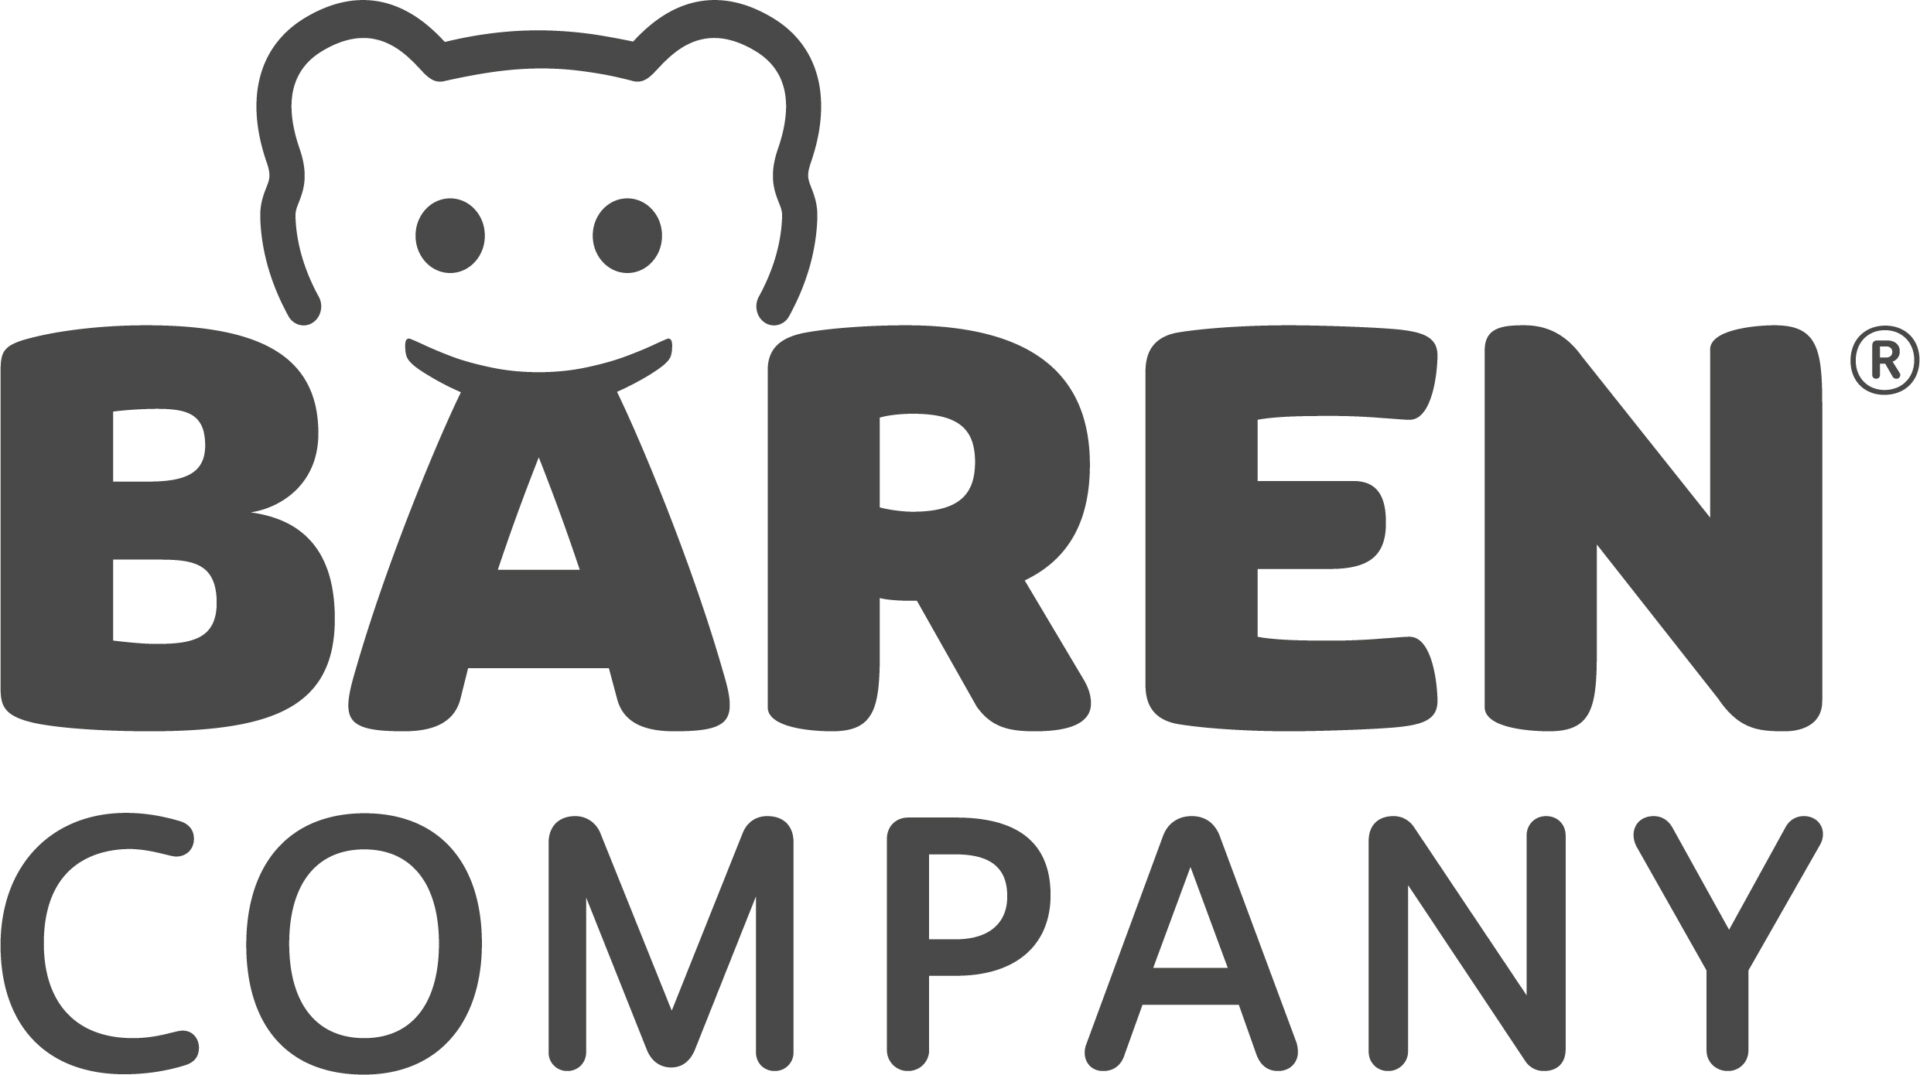 Bären Company